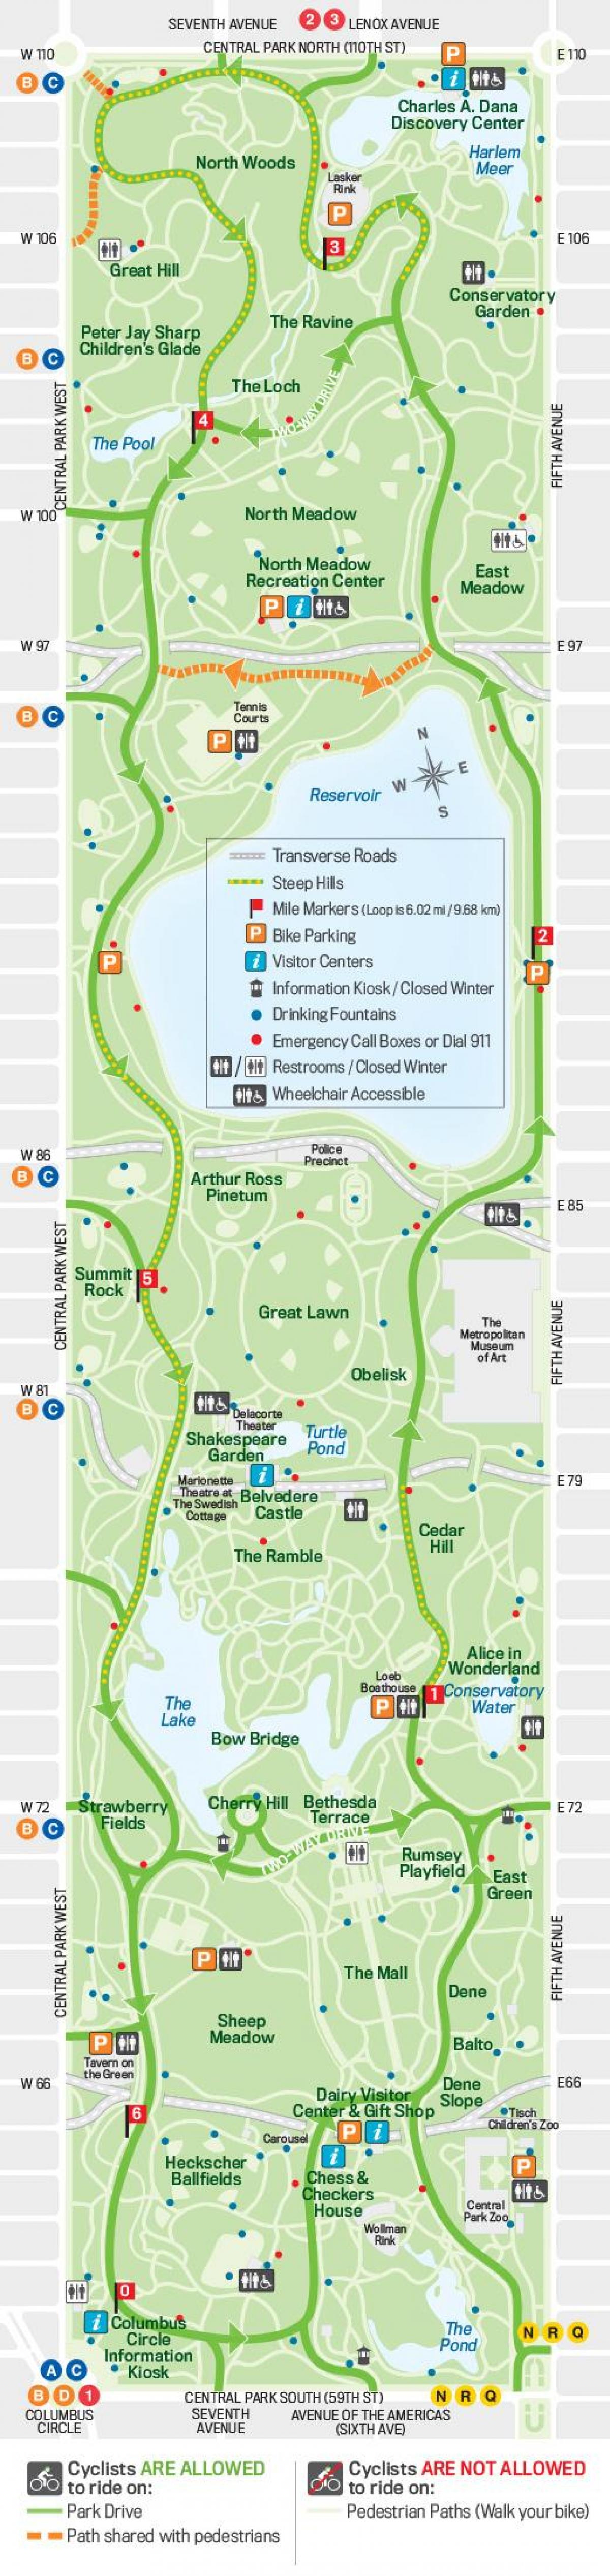 موٹر سائیکل کا نقشہ سینٹرل پارک